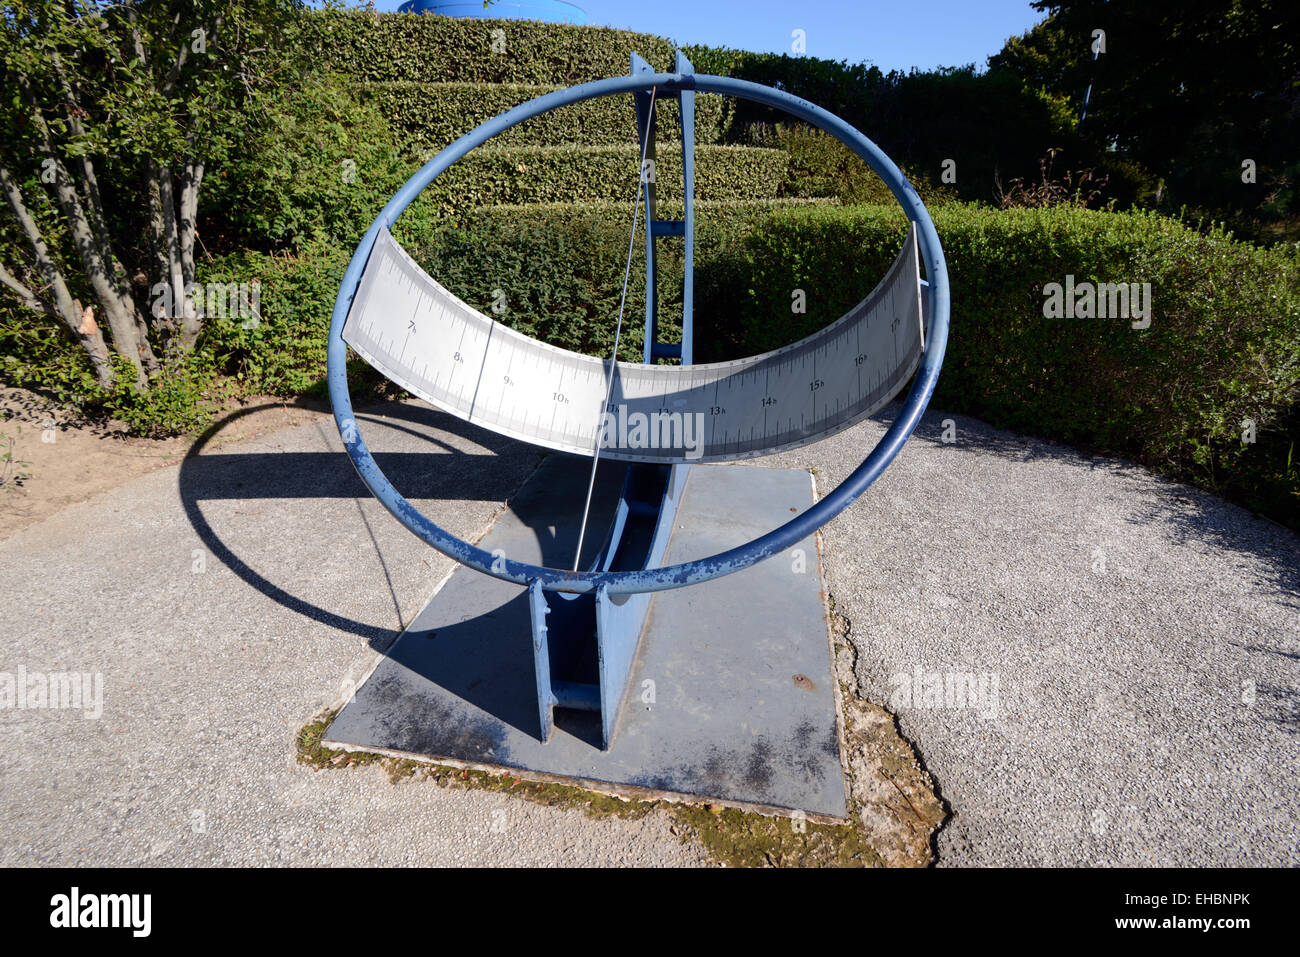 Heliochronometer Precision Sundial Cité de l'Espace Science and Space Theme Park Toulouse France Stock Photo